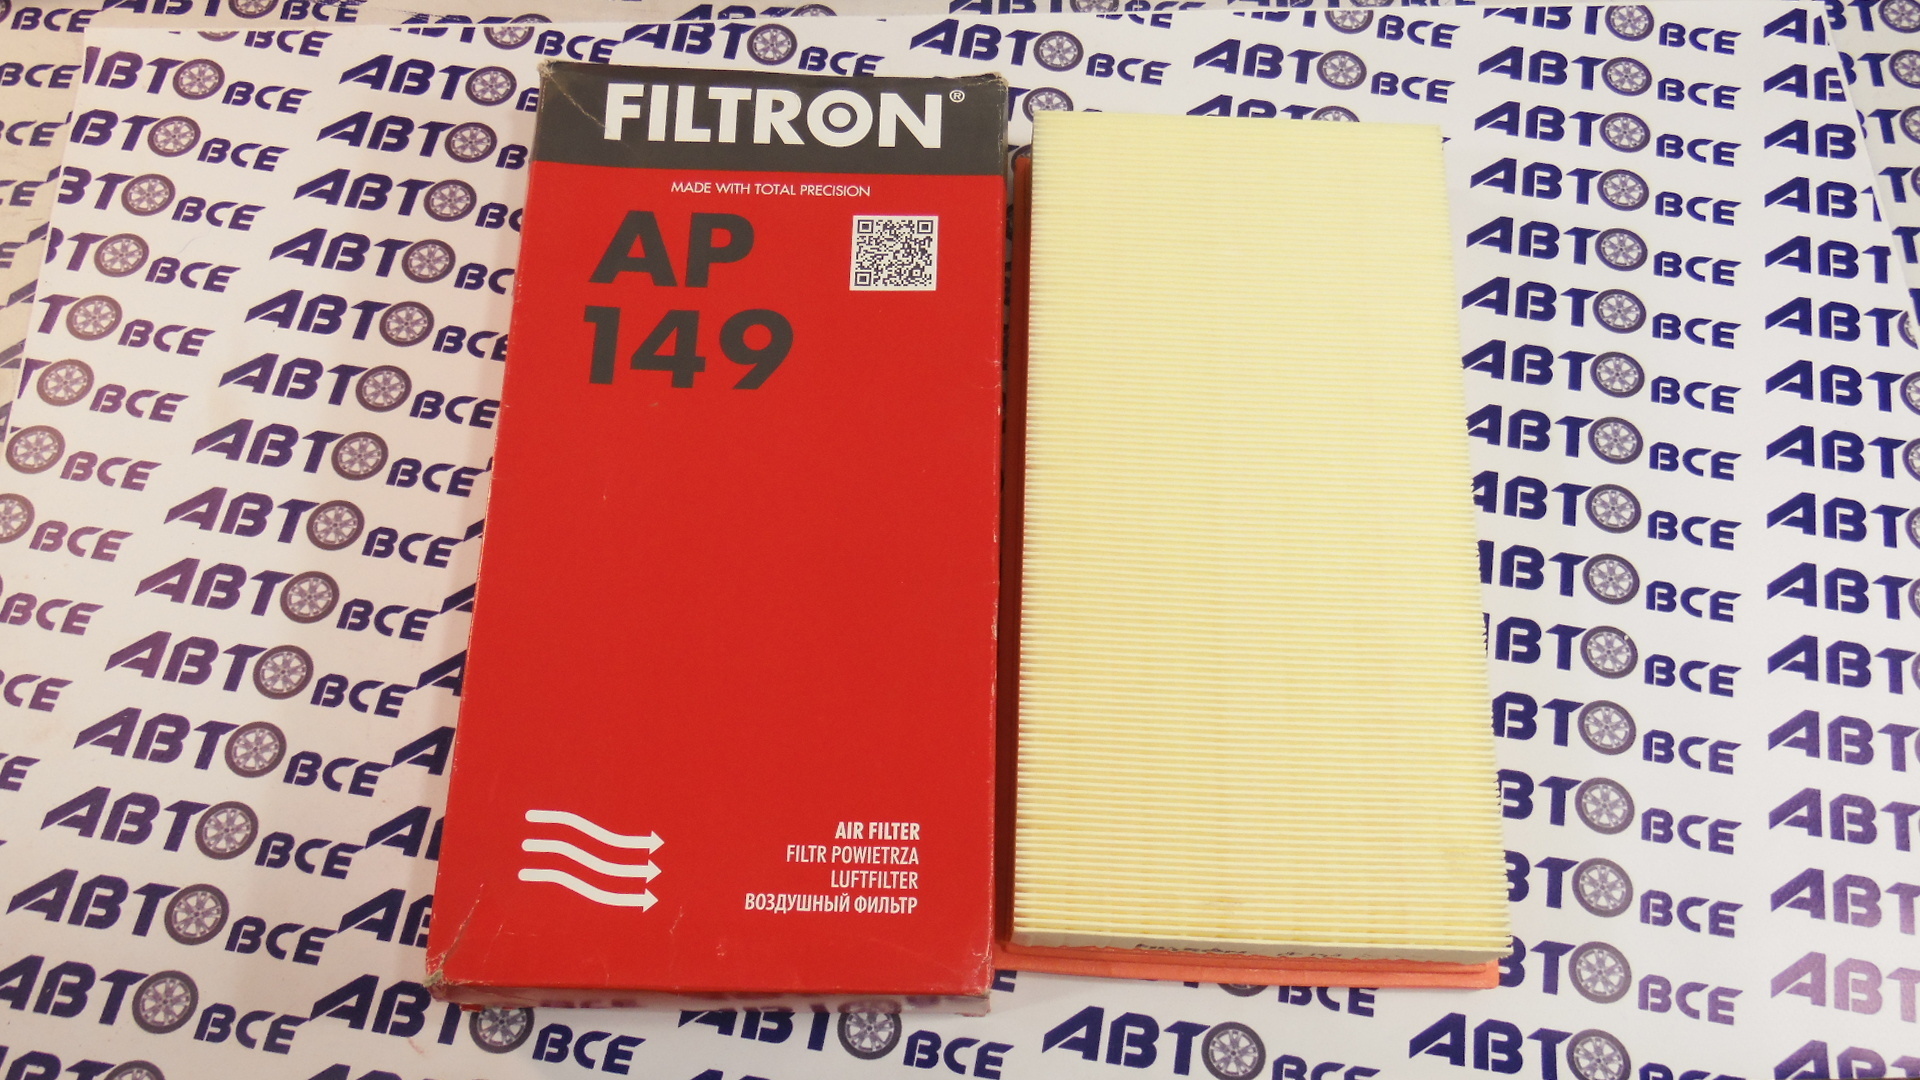 Фильтр воздушный AP149 FILTRON